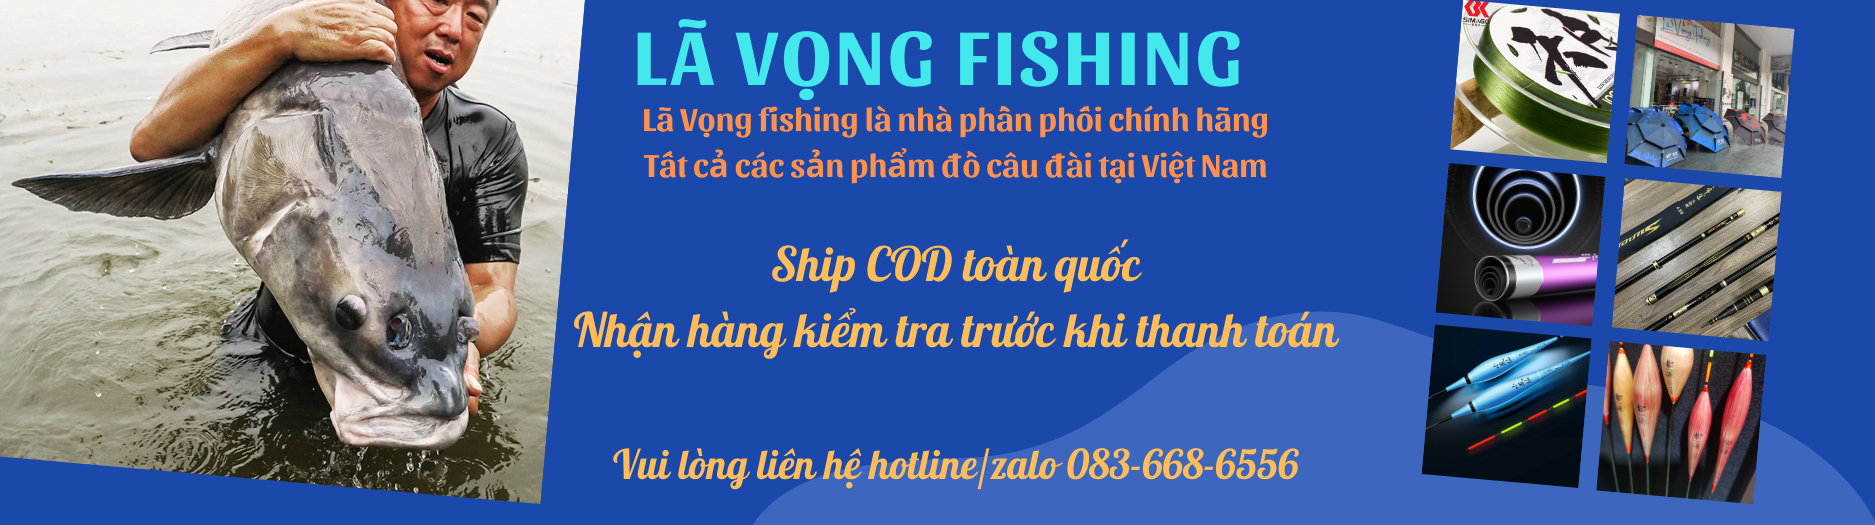 Đồ câu cá chính hãng Lã Vọng fishing – lavongfishingvn